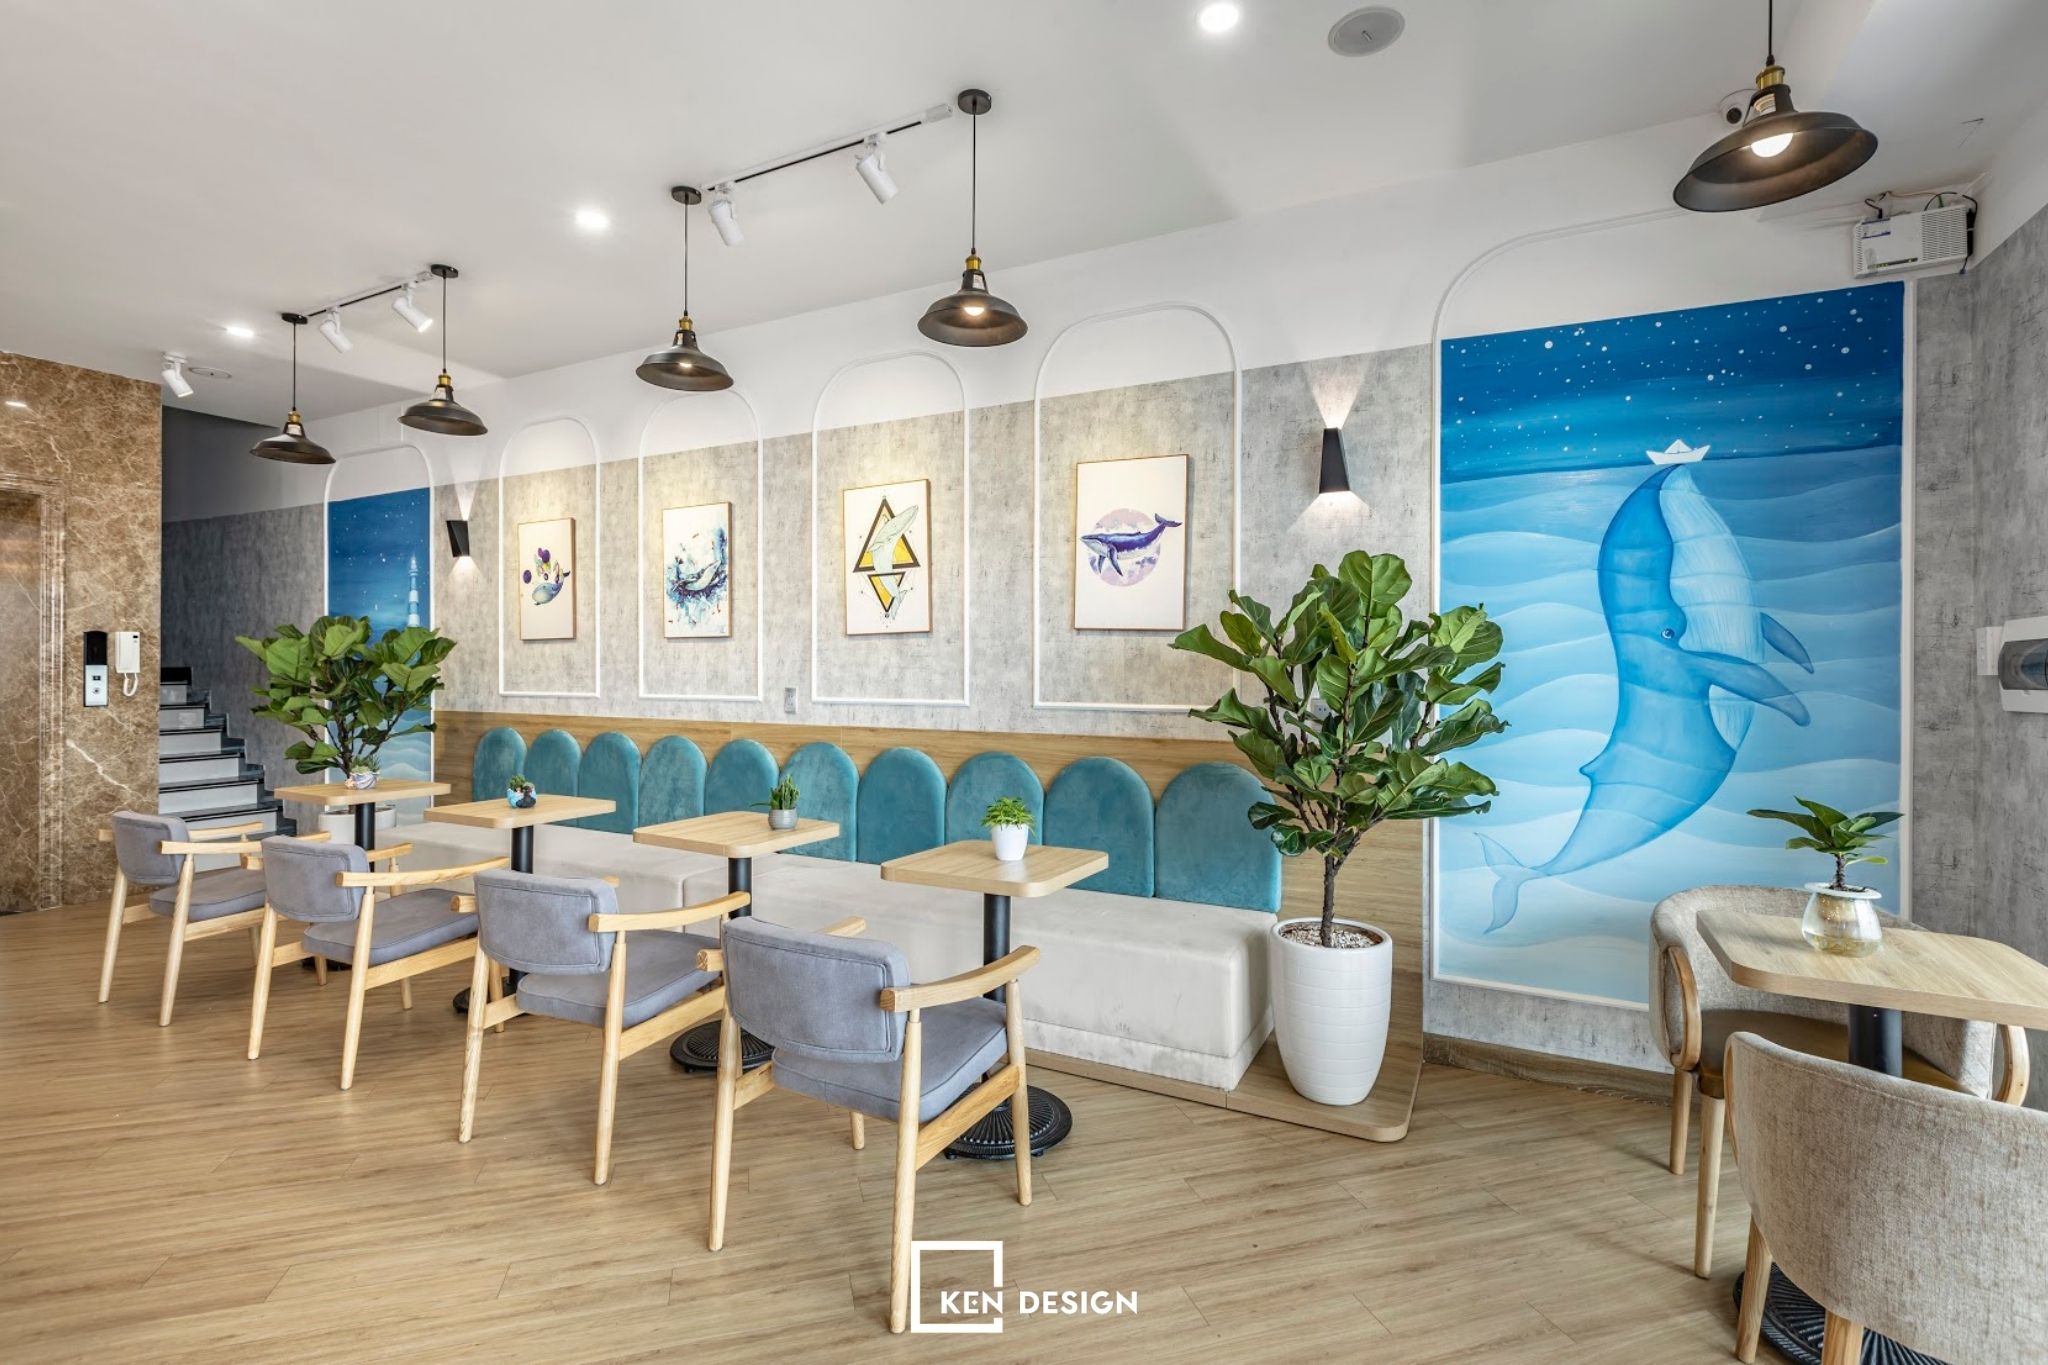  thiết kế quán cafe phong cách Santorini